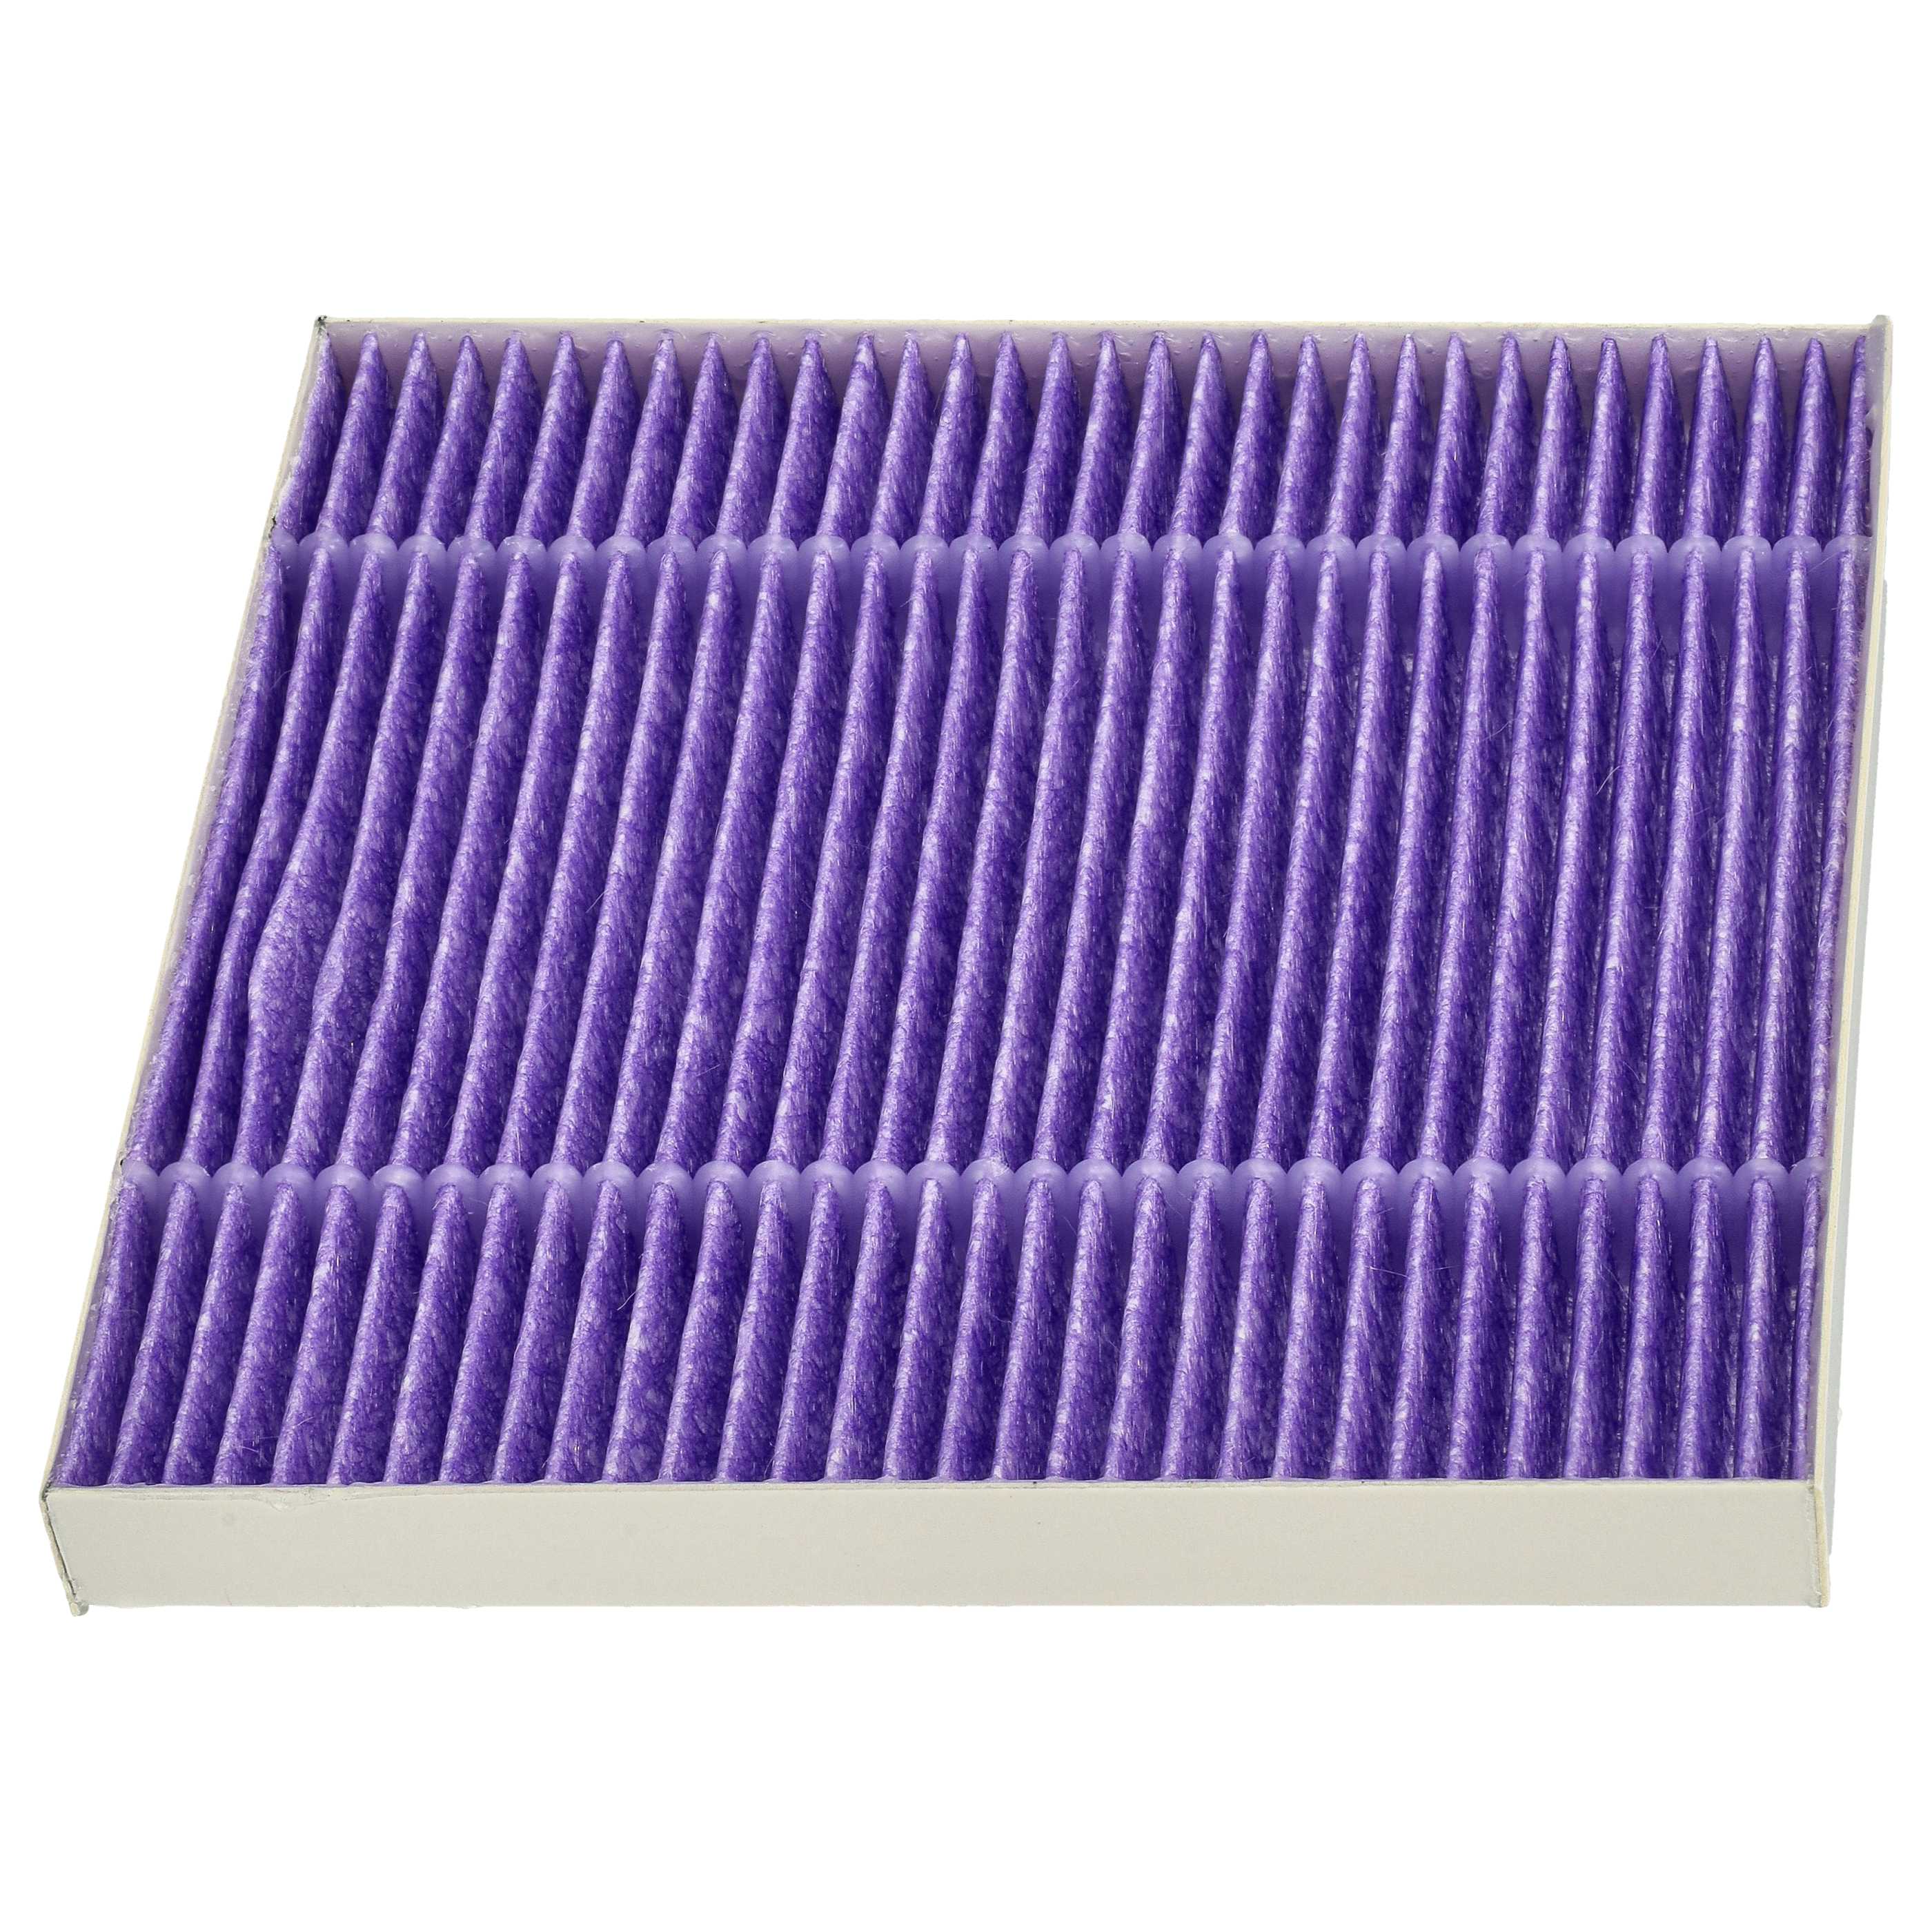 Filtro per aspirapolvere Hitachi CV - filtro HEPA, bianco / lilla